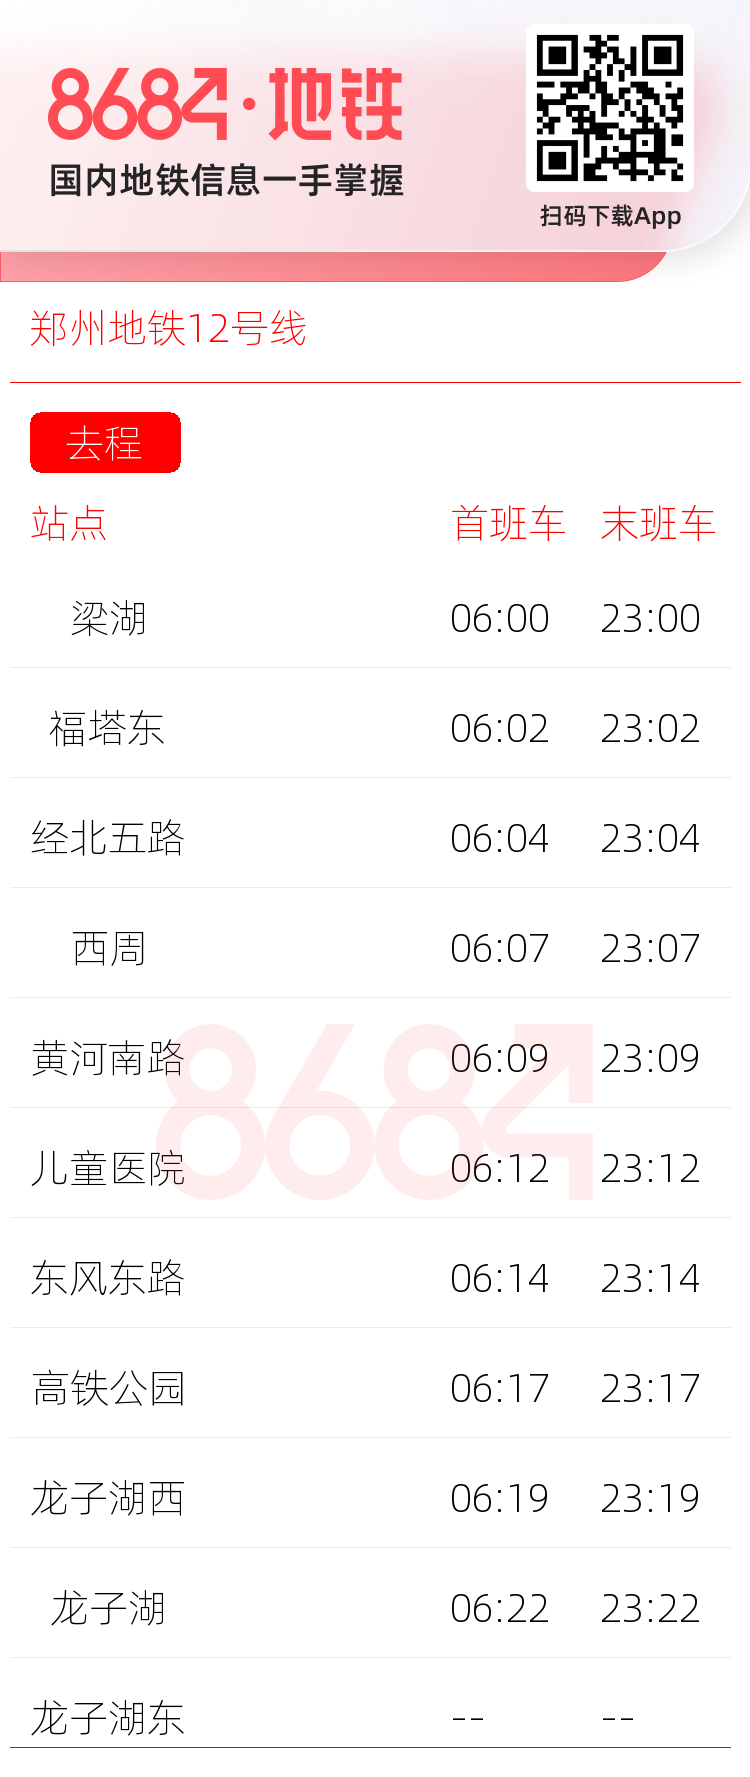 郑州地铁12号线运营时间表